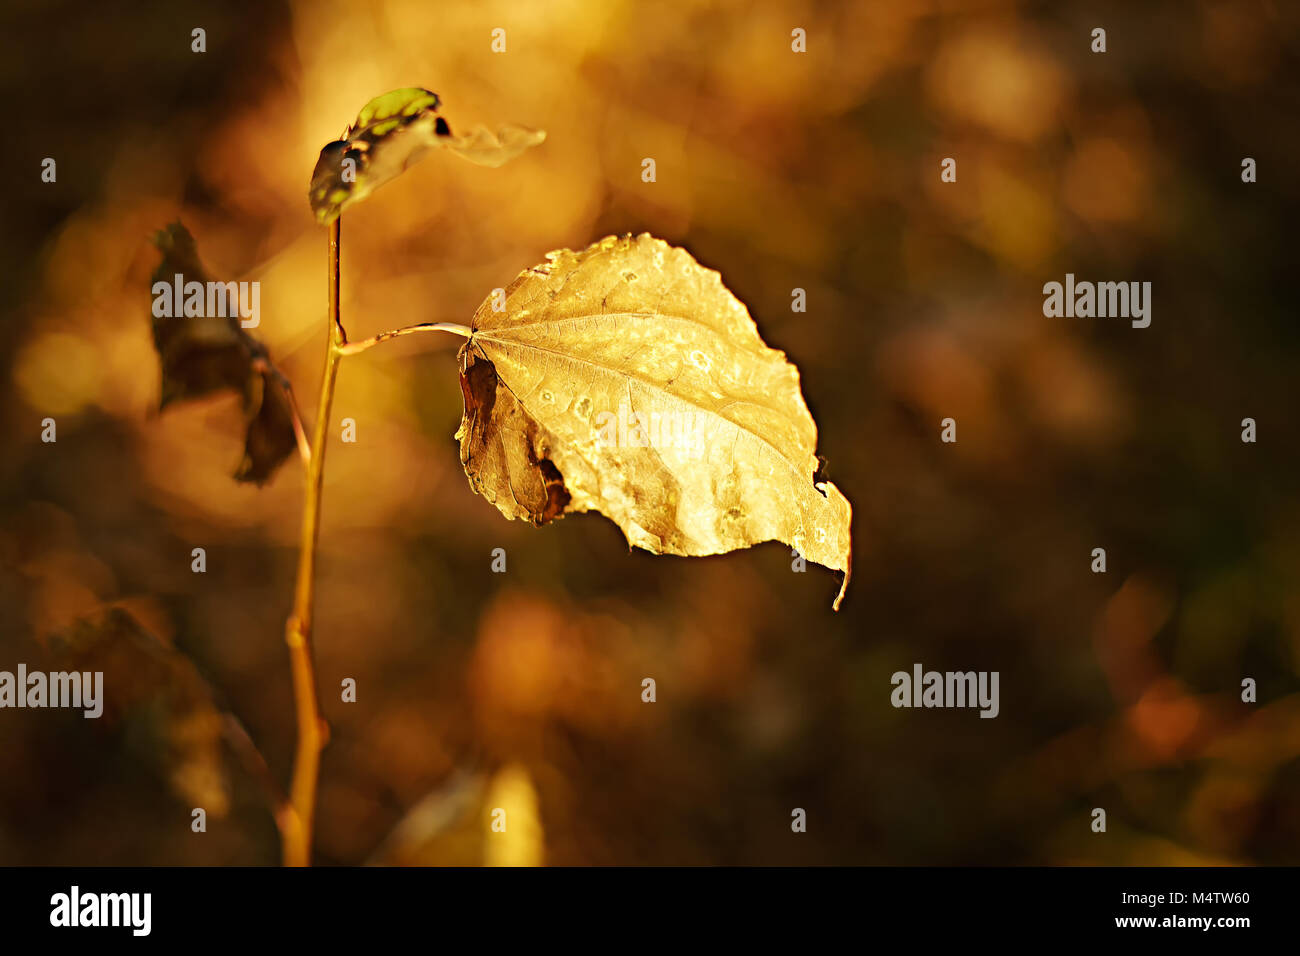 Automne fond. Résumé fond d'automne vintage avec des feuilles colorées et sun flares. Forêt d'automne doré Banque D'Images